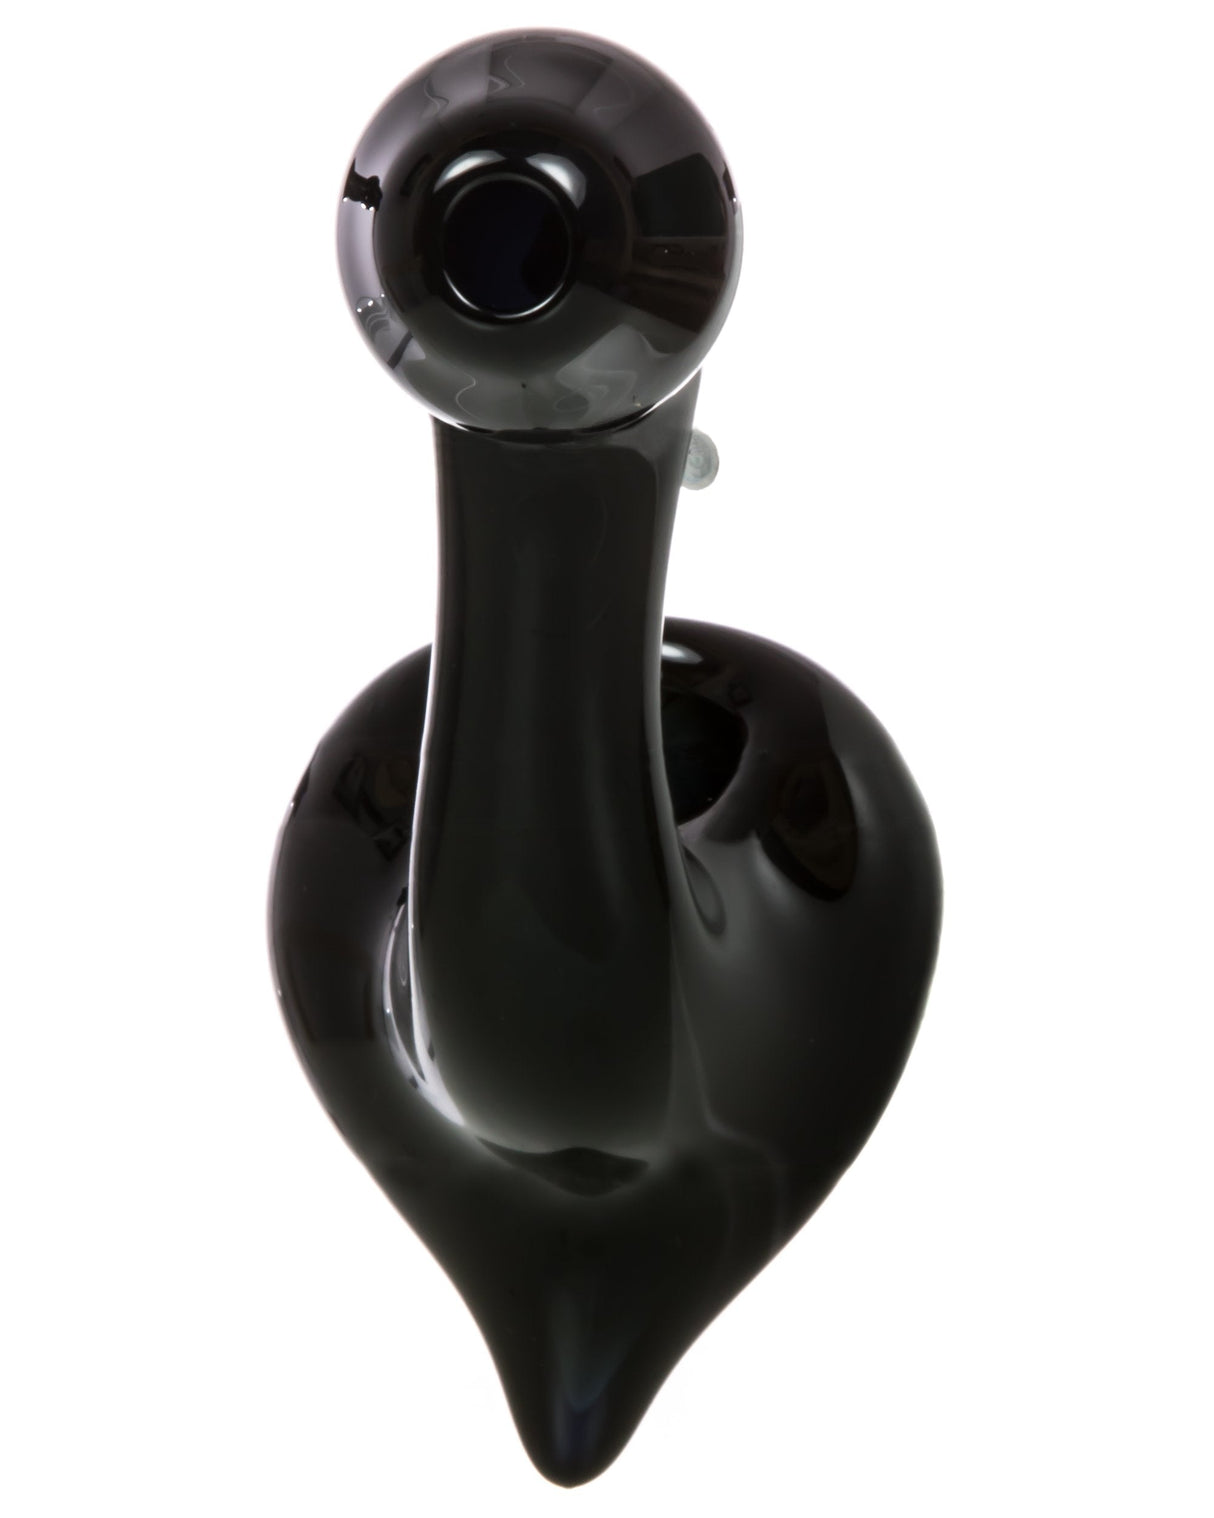 Chameleon Glass Slyme Phantom Sherlock Pipe in glossy black, front view on white background